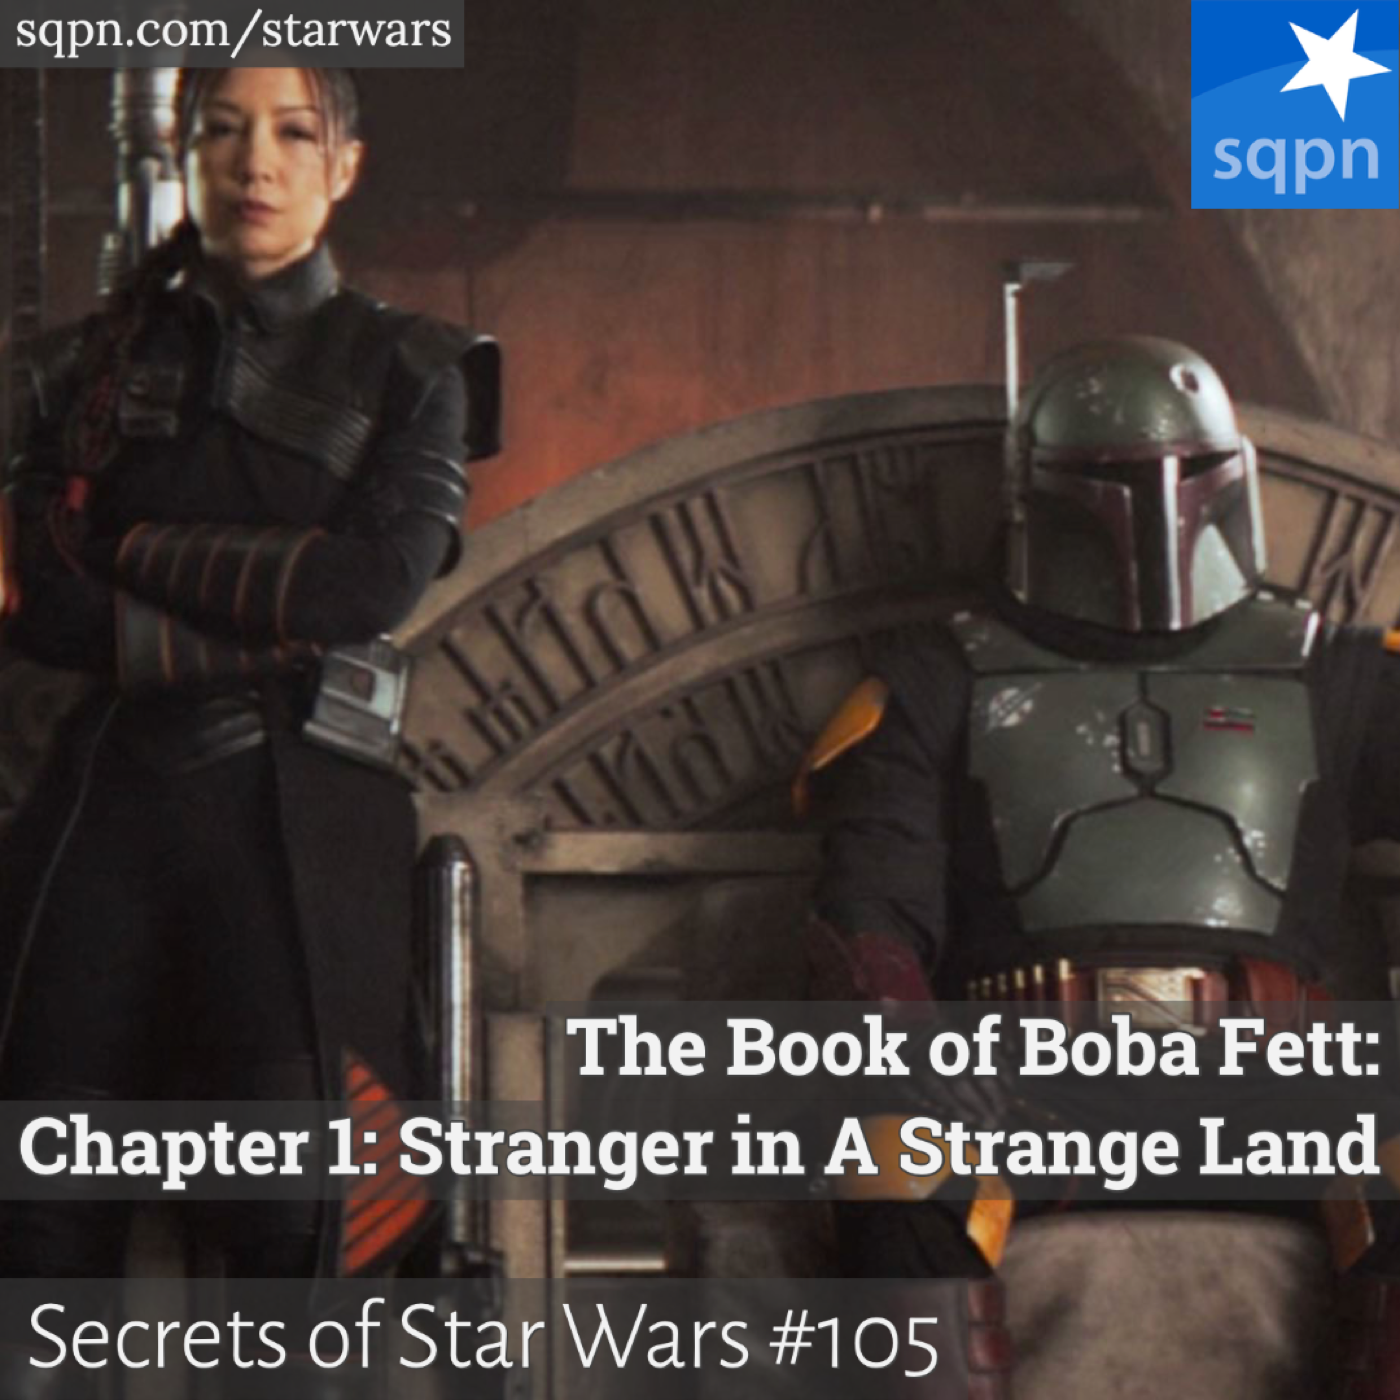 The Book of Boba Fett: Chapter 1: Stranger in A Strange Land